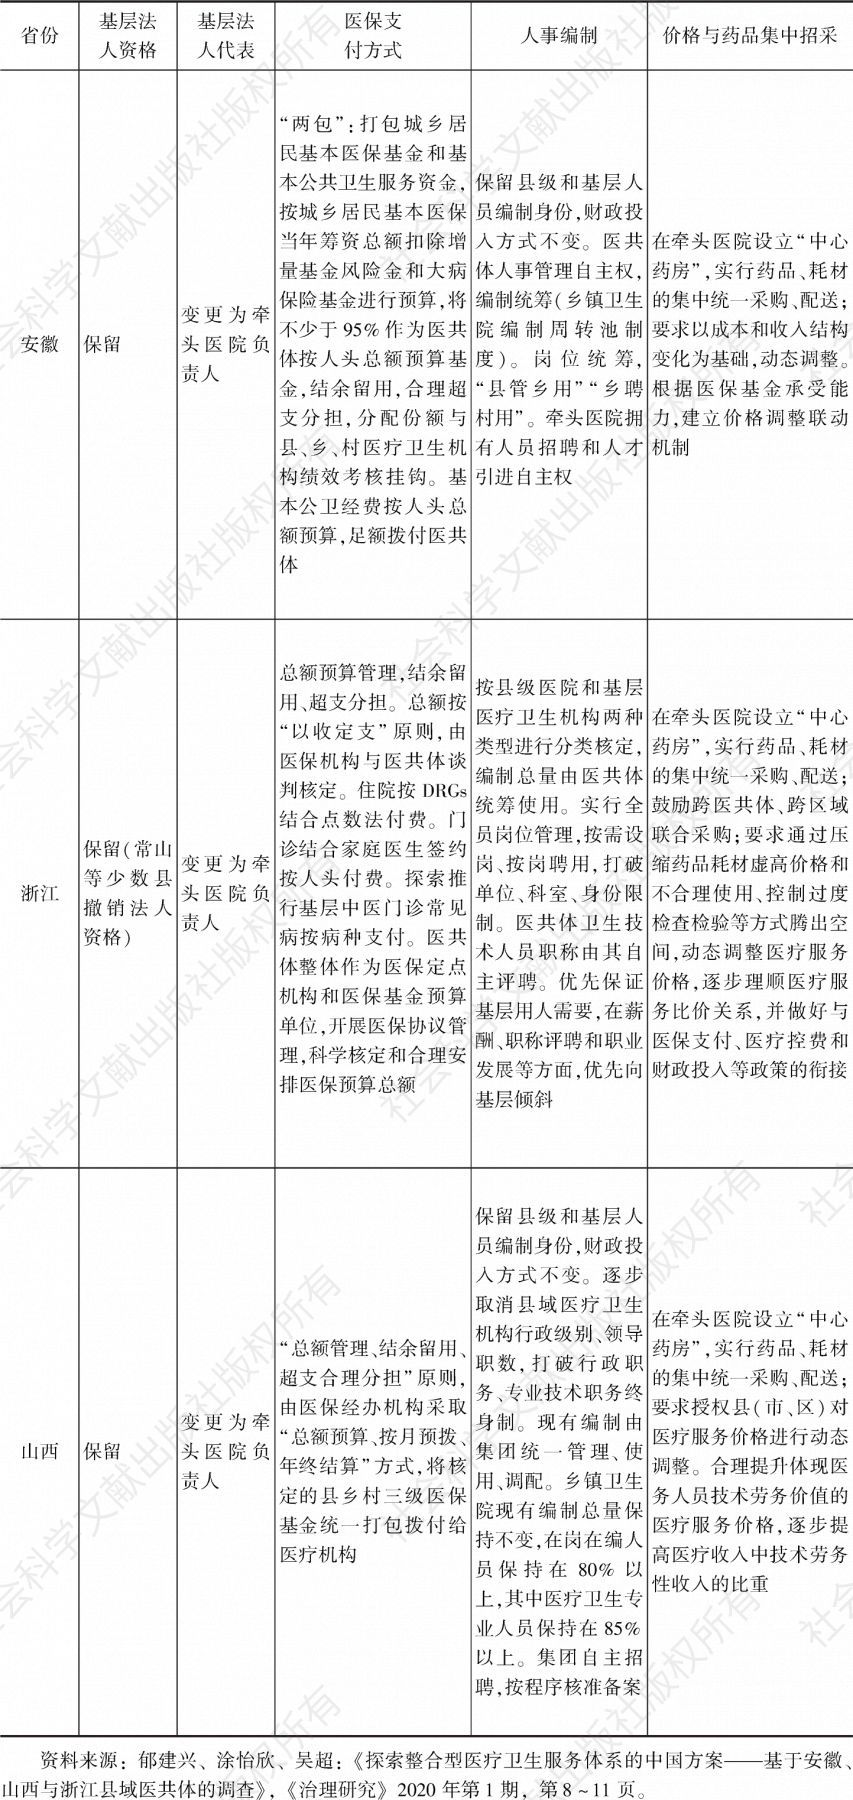 表1 安徽、山西、浙江县域医共体改革路径比较